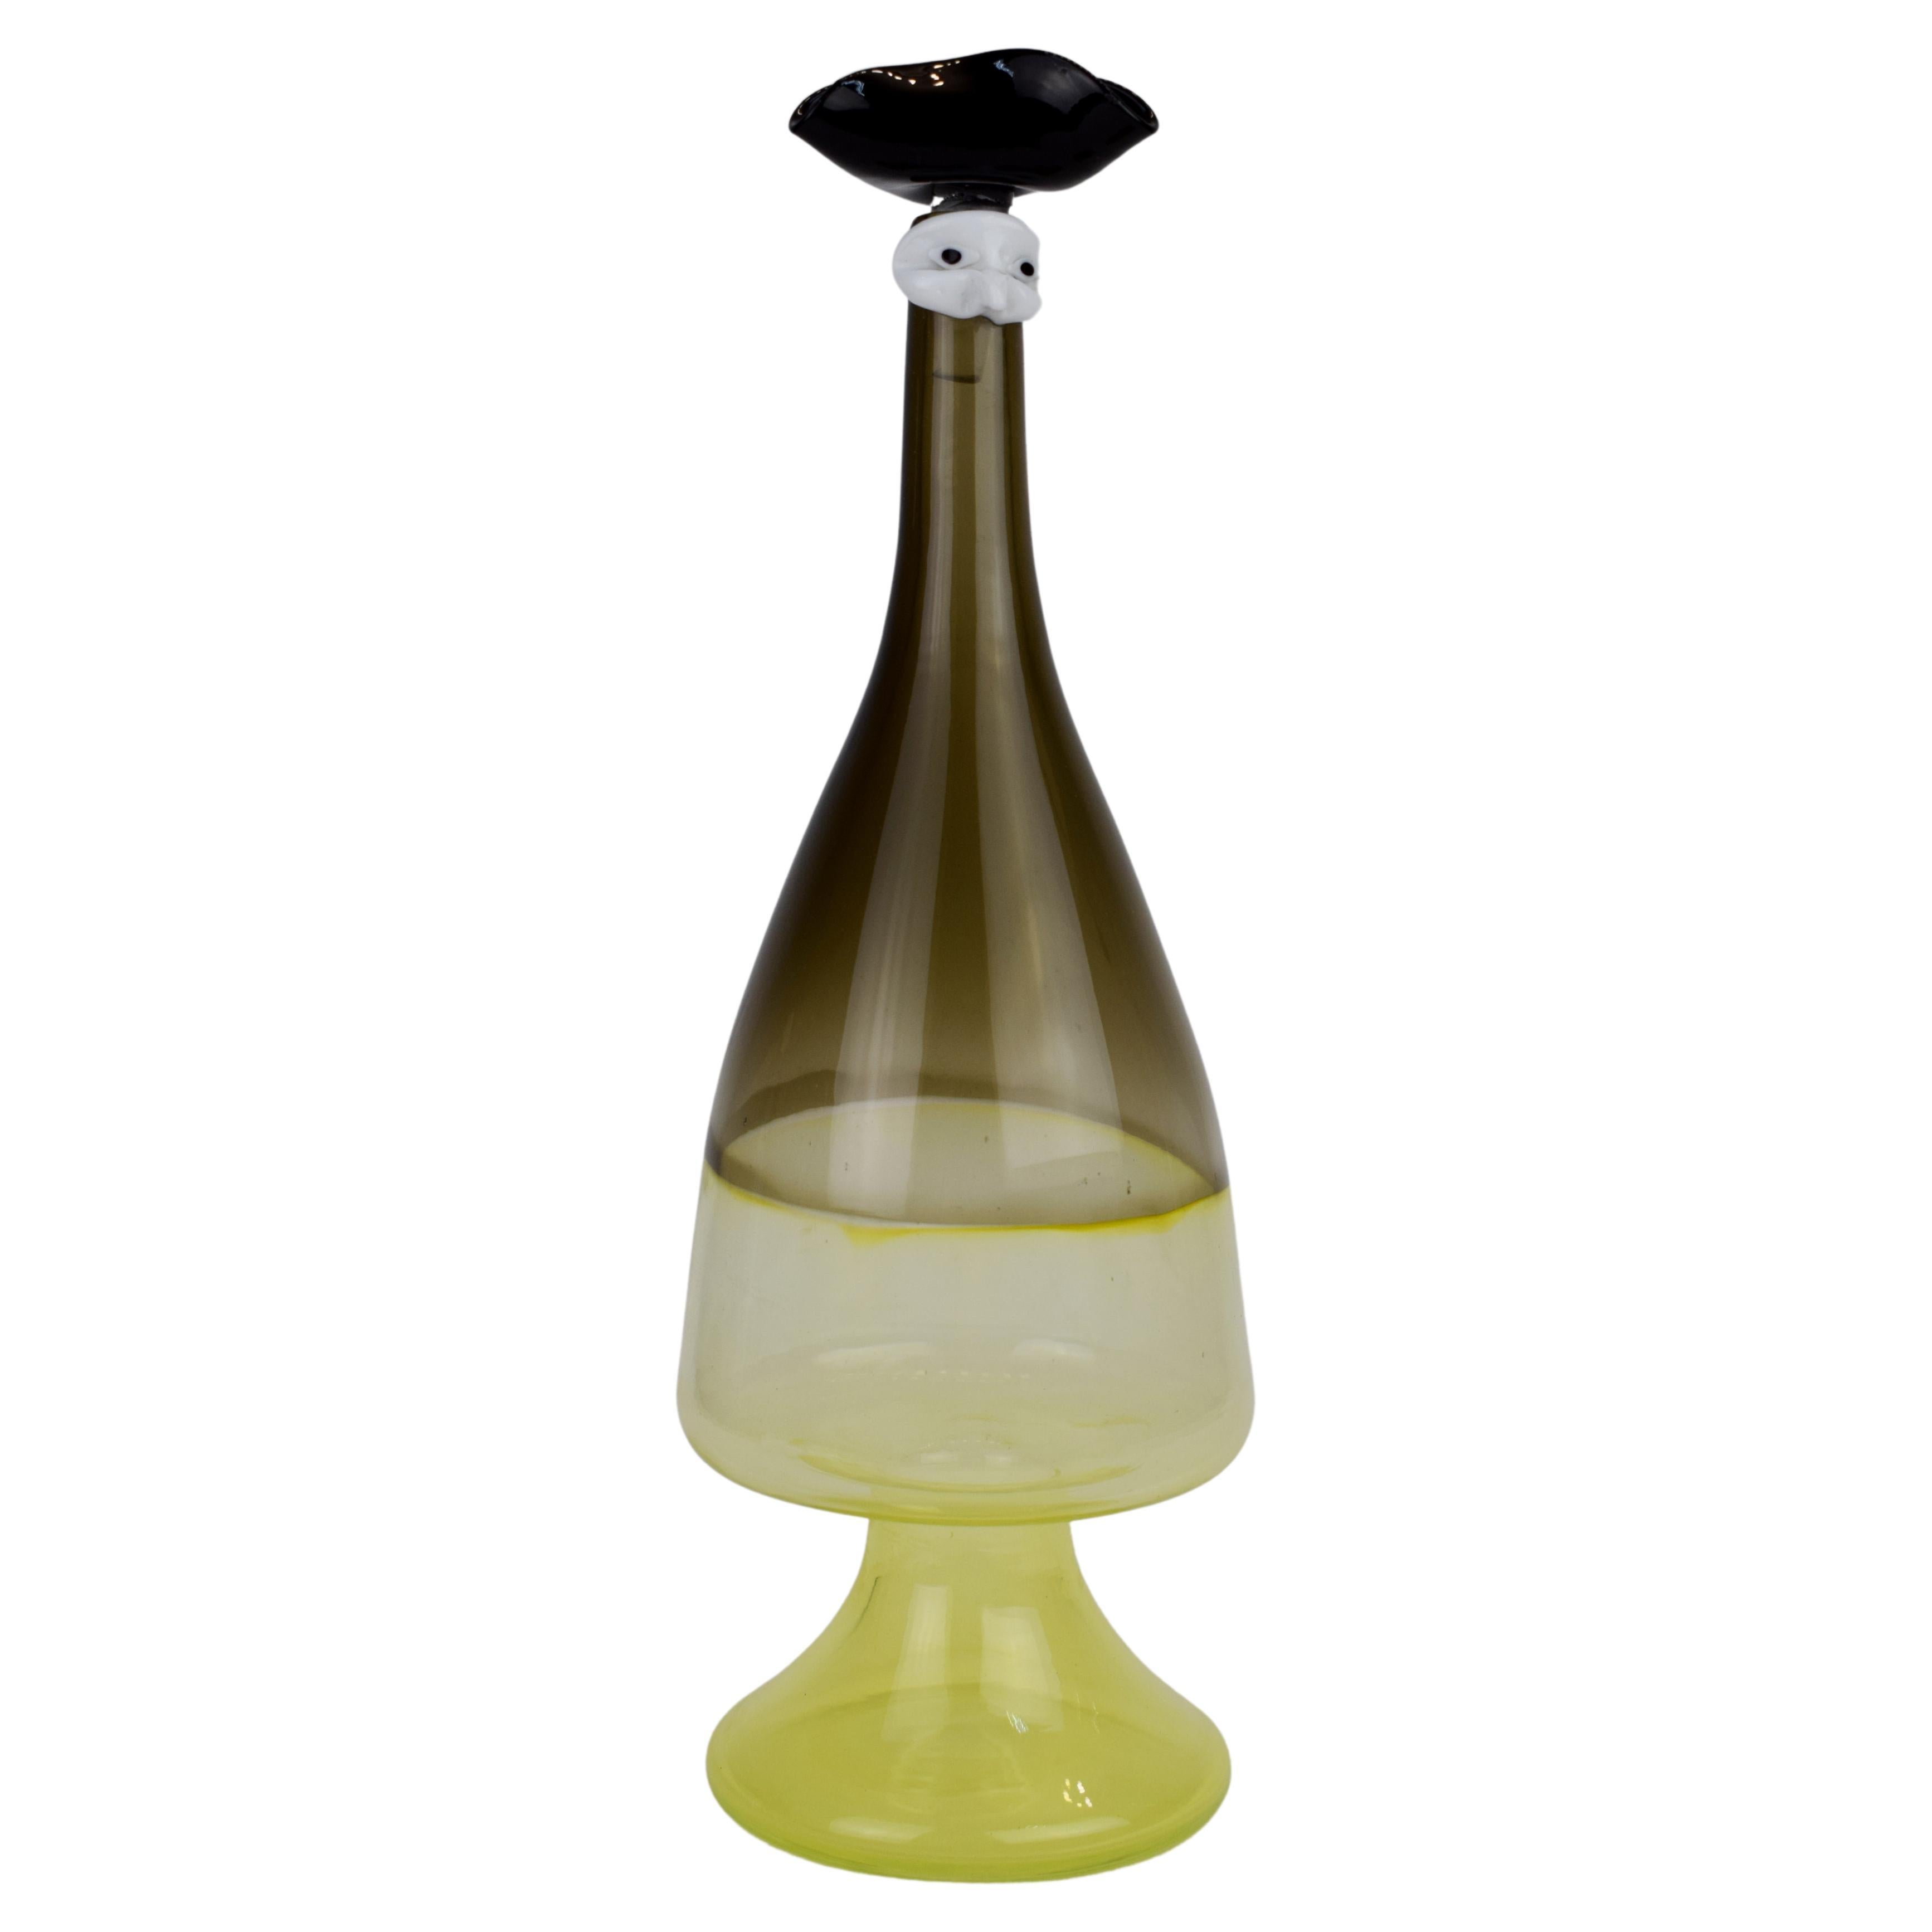 Italian Murano Glass Vase, 1960s.